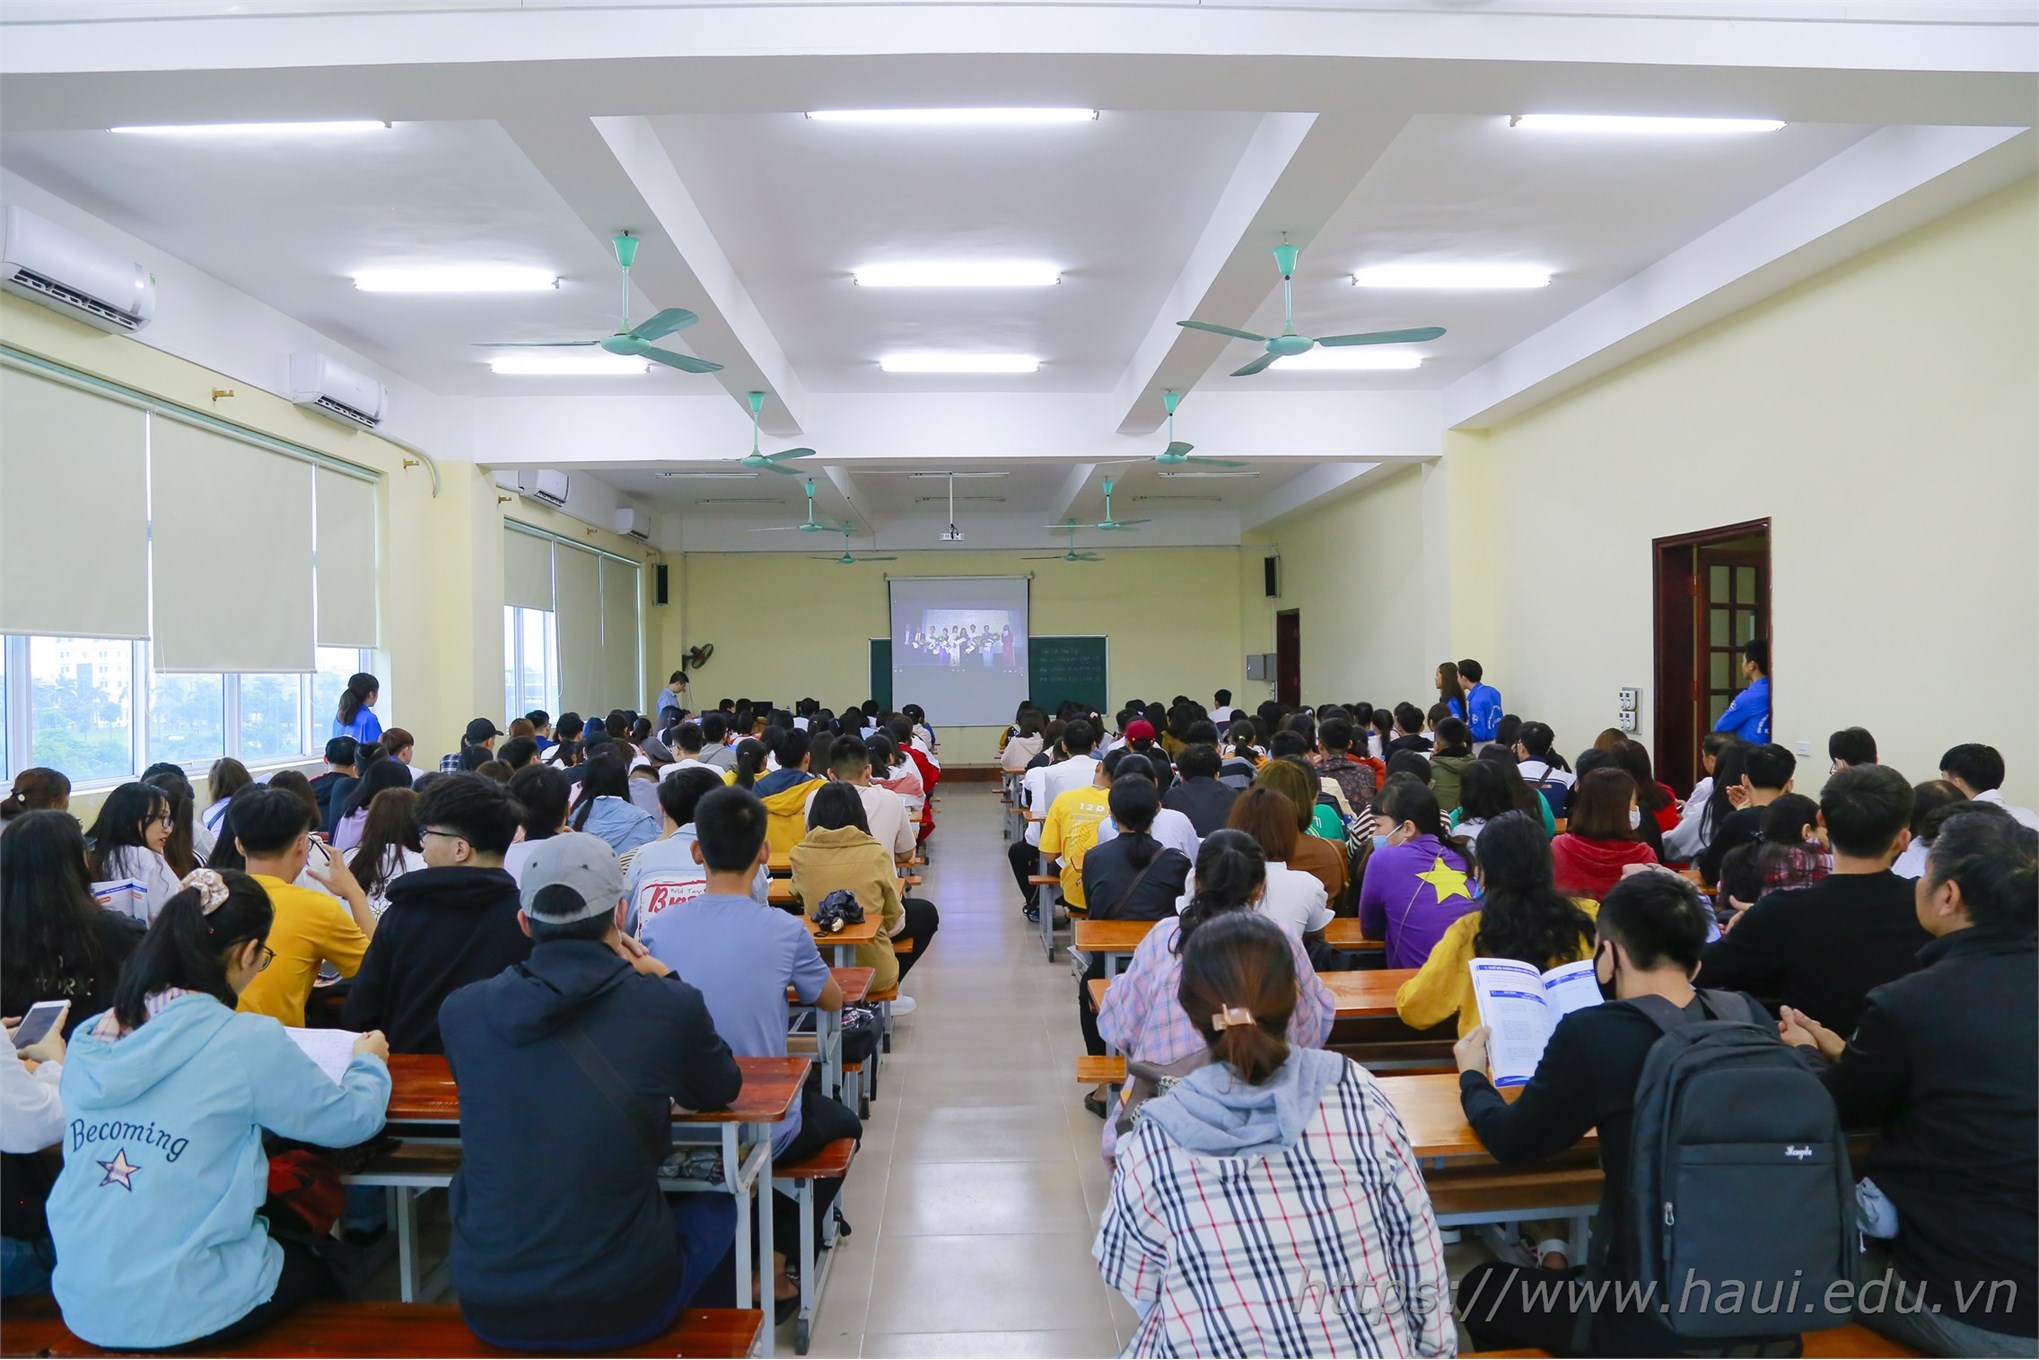 Over 7,000 freshmen join Hanoi University of Industry